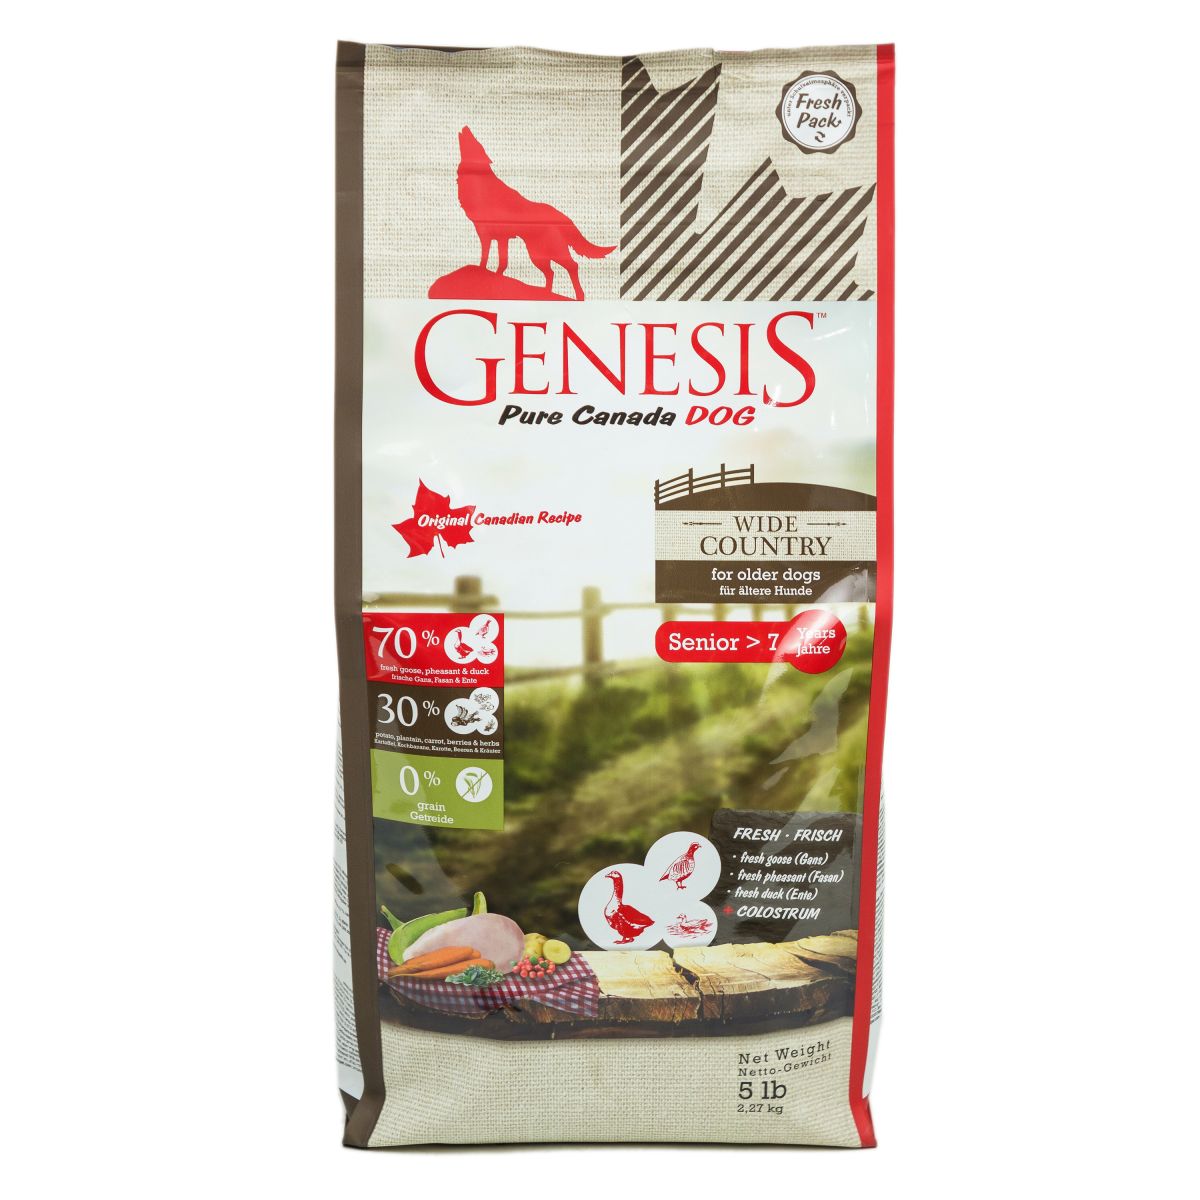 Genesis pure canada wide country senior для пожилых собак всех пород с мясом гуся, фазана, утки и курицы